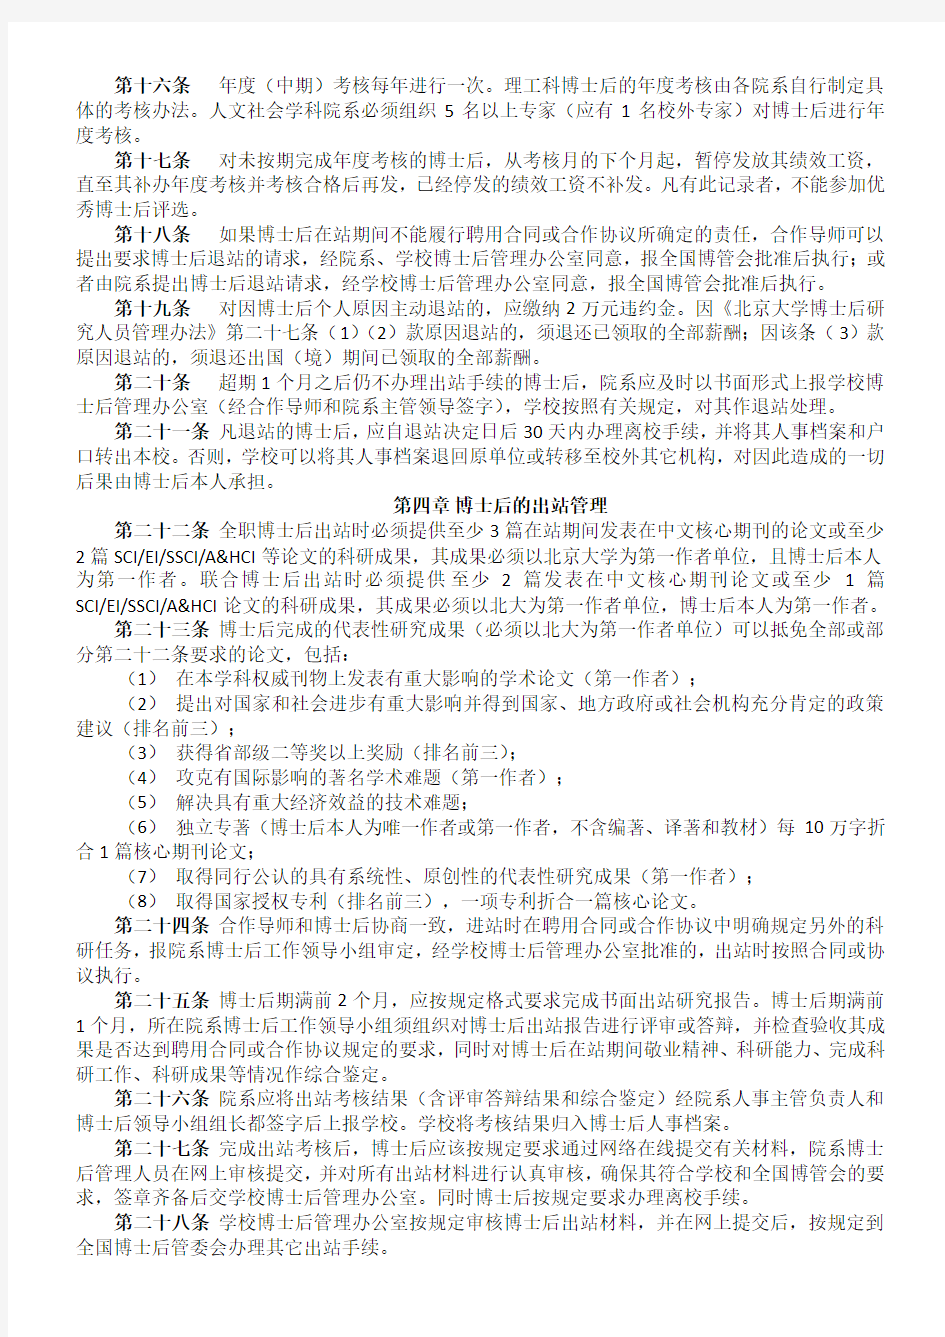 北京大学博士后招募进出站与在站管理实施细则